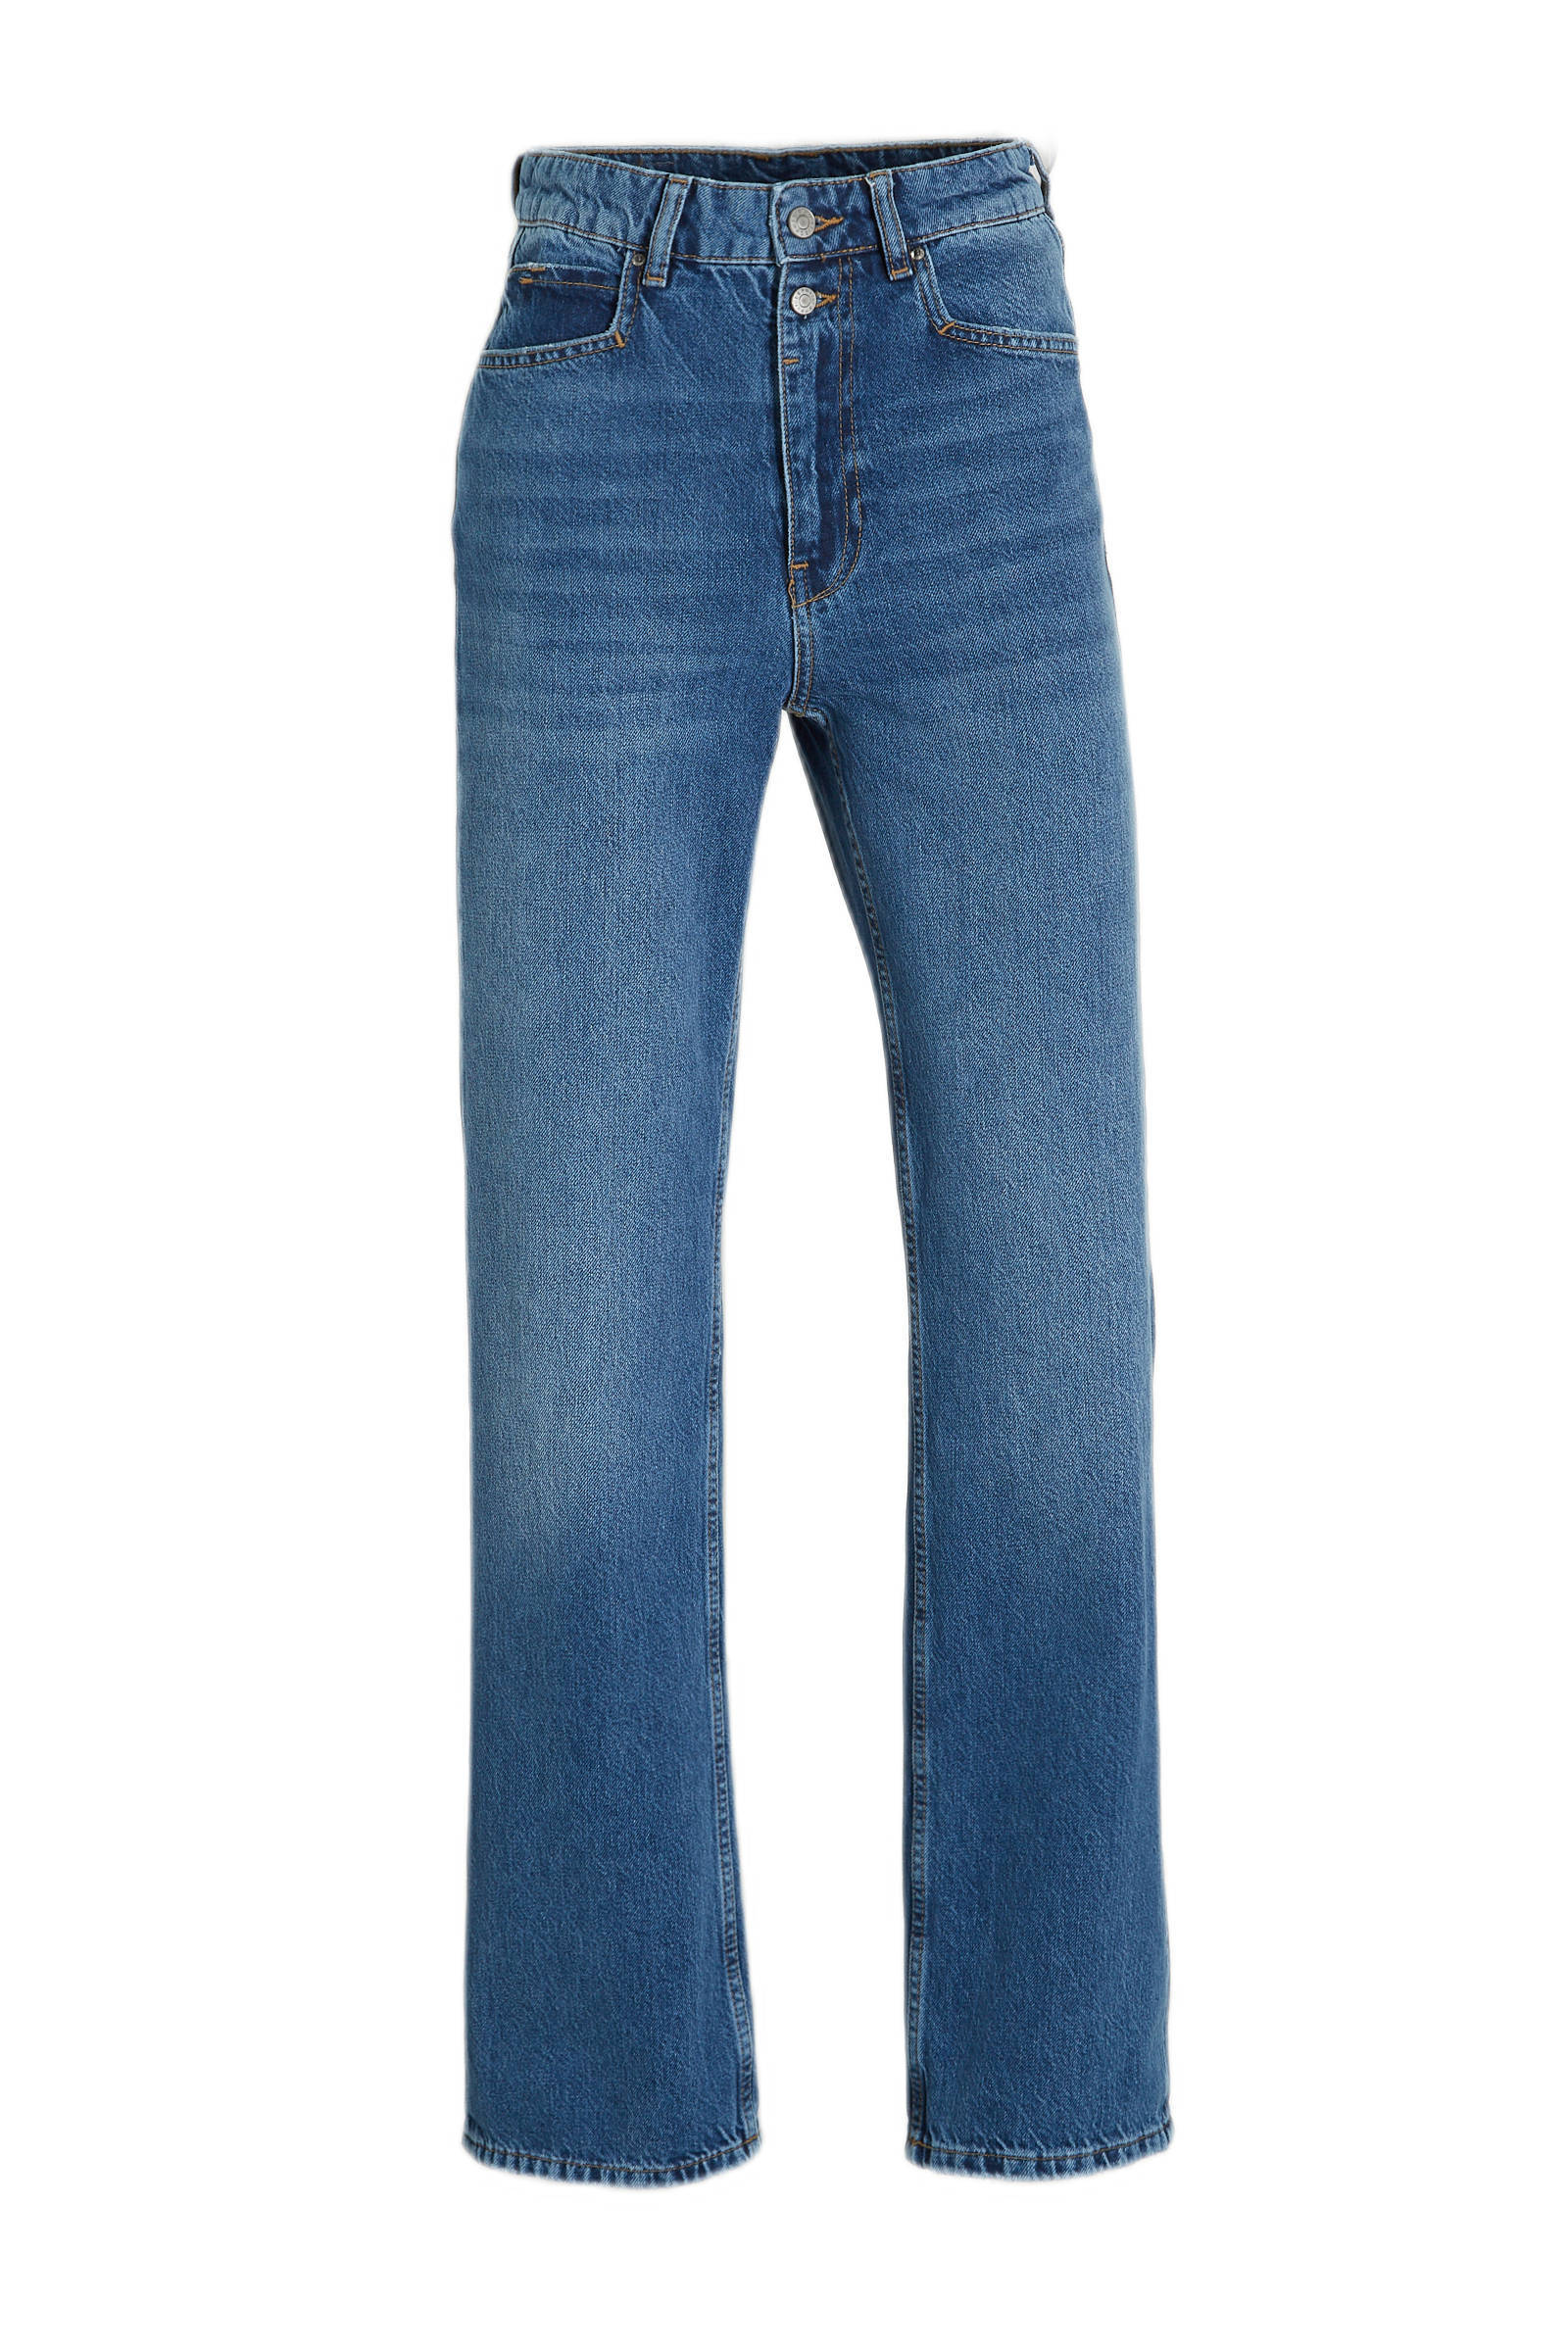 Esprit H2c055 Jeansbroek/lang in het Blauw Dames Kleding voor voor Jeans voor Jeans met rechte pijp 